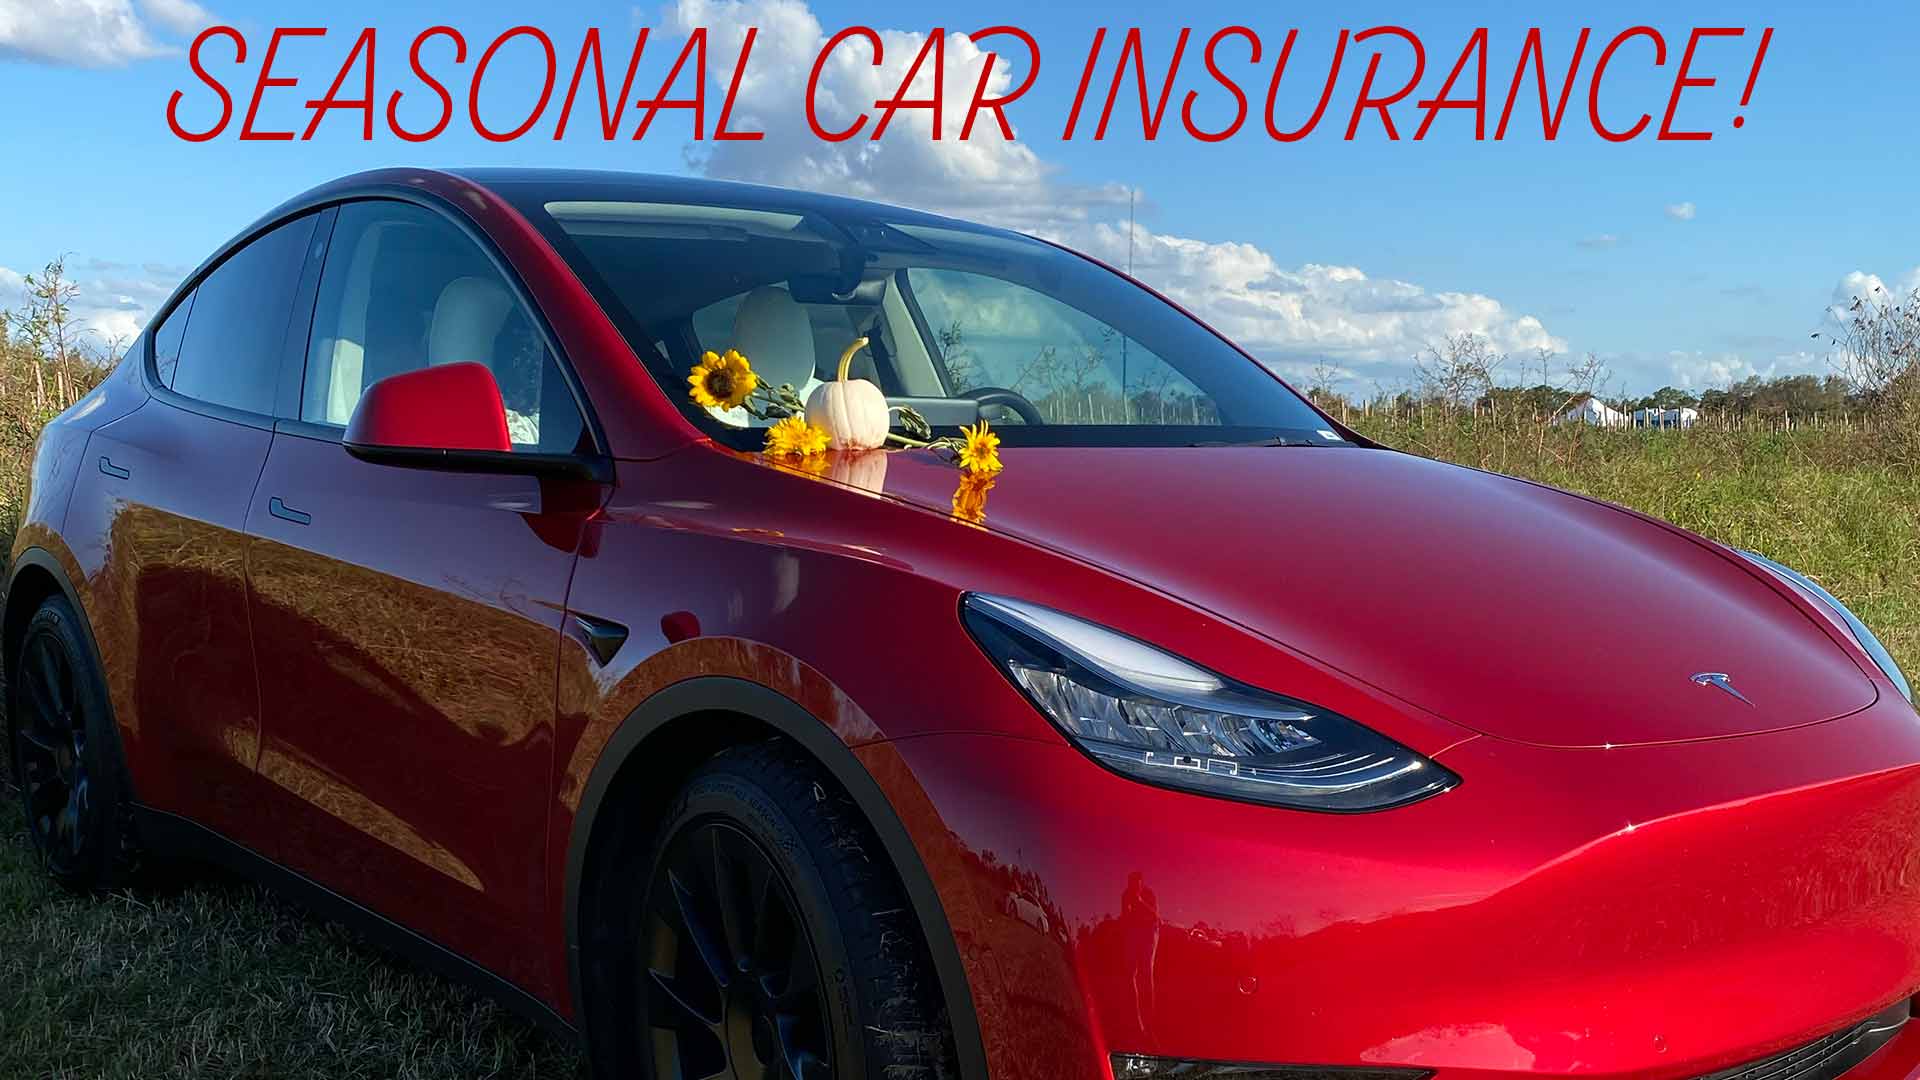 Seasonal Car Insurance